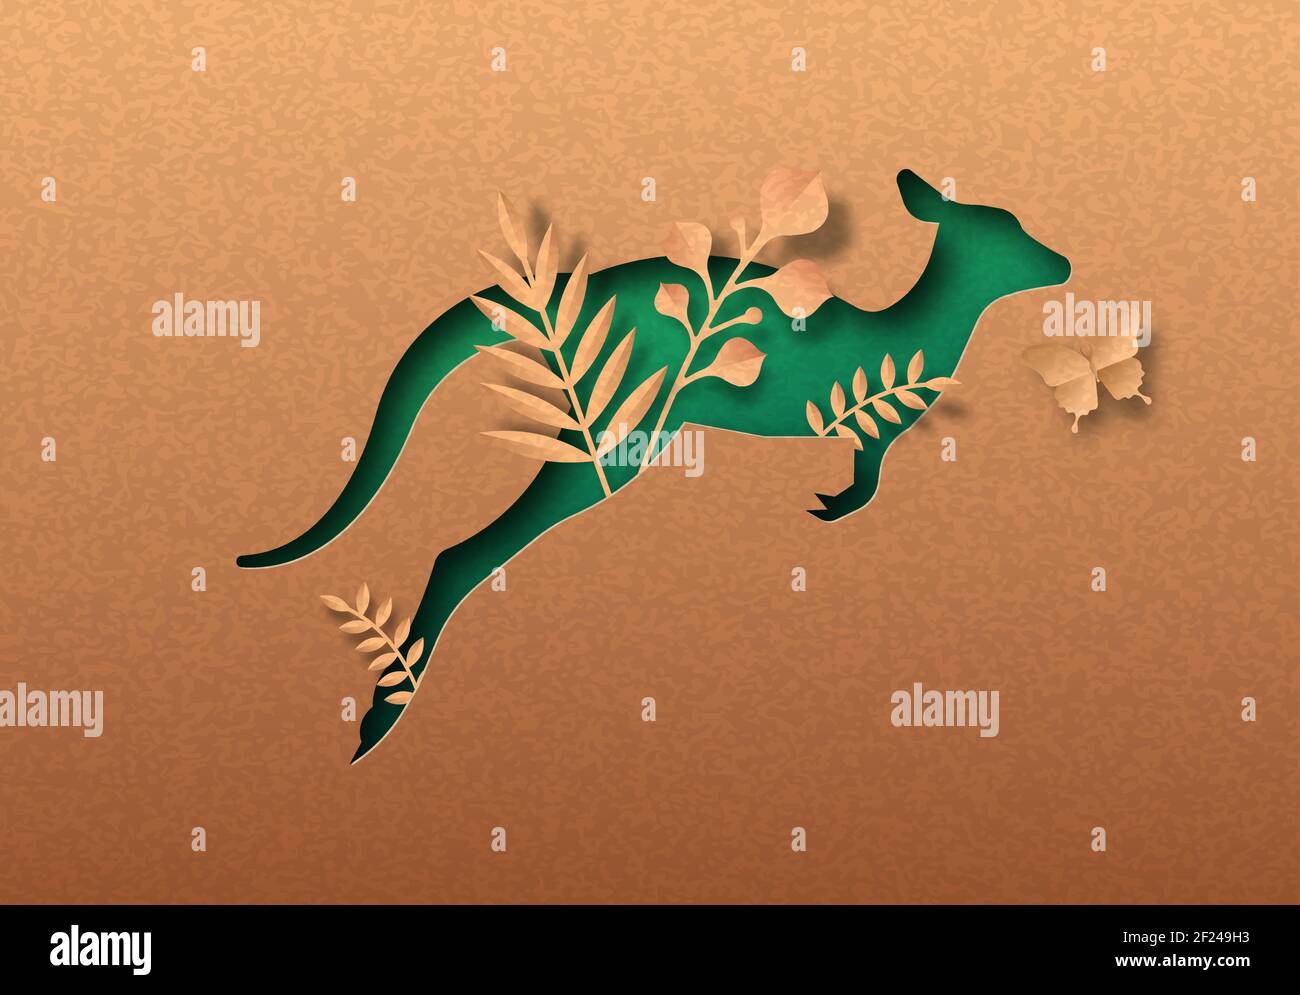 Grün Känguru Tier isoliert papercut Silhouette mit tropischen Pflanzen Blatt innen. Wandausschnitt aus recyceltem Papier. Tierschutz, aust Stock Vektor